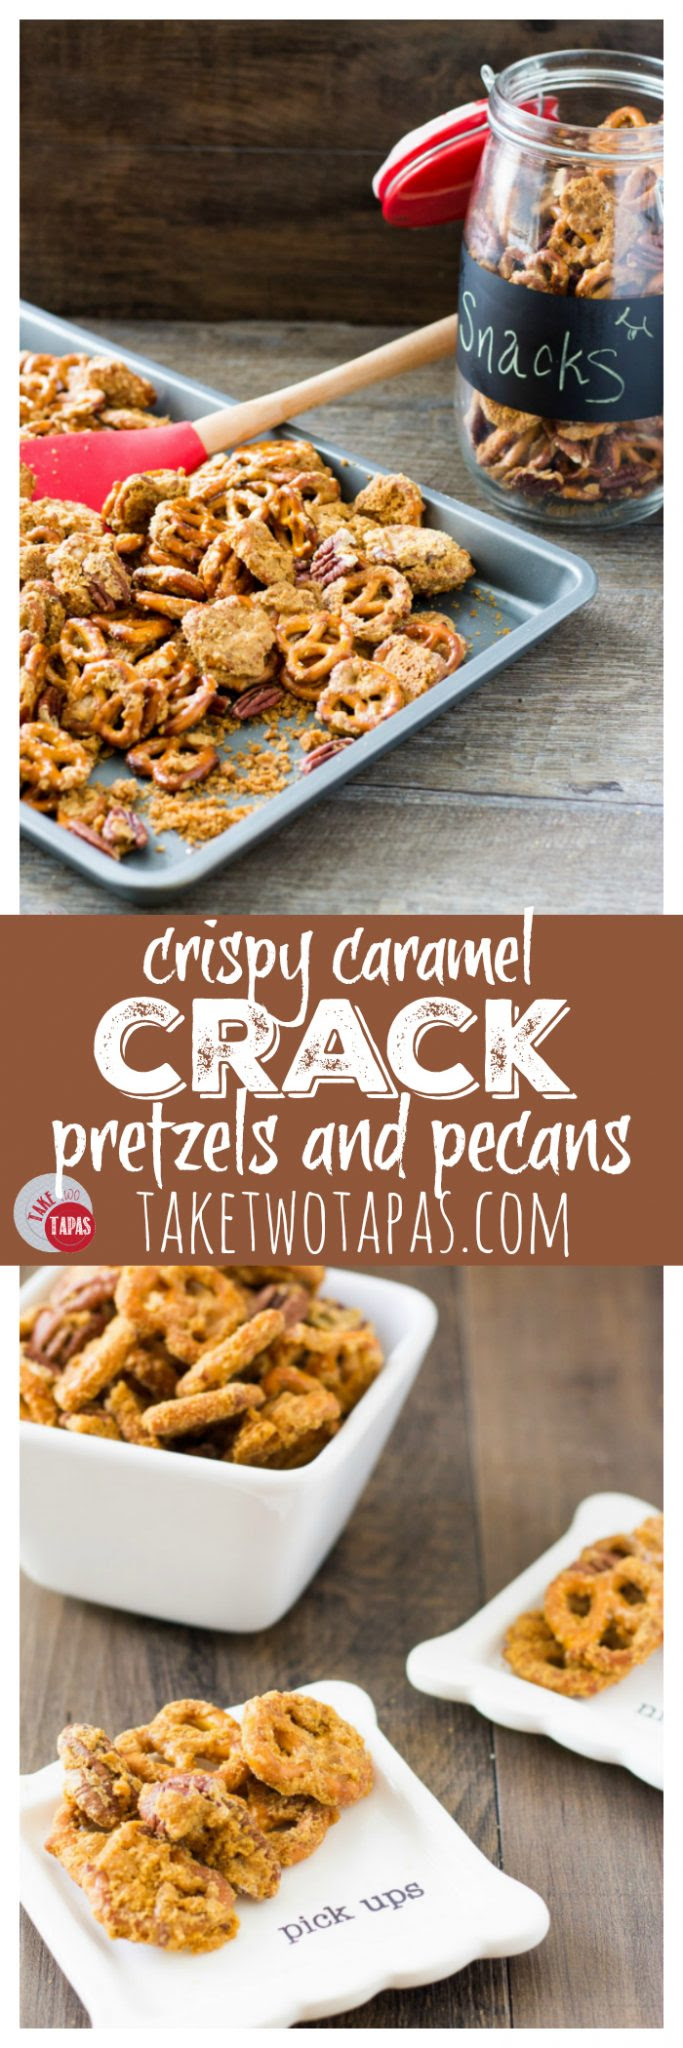 Crack Pretzels With Crispy Caramel and Pecans